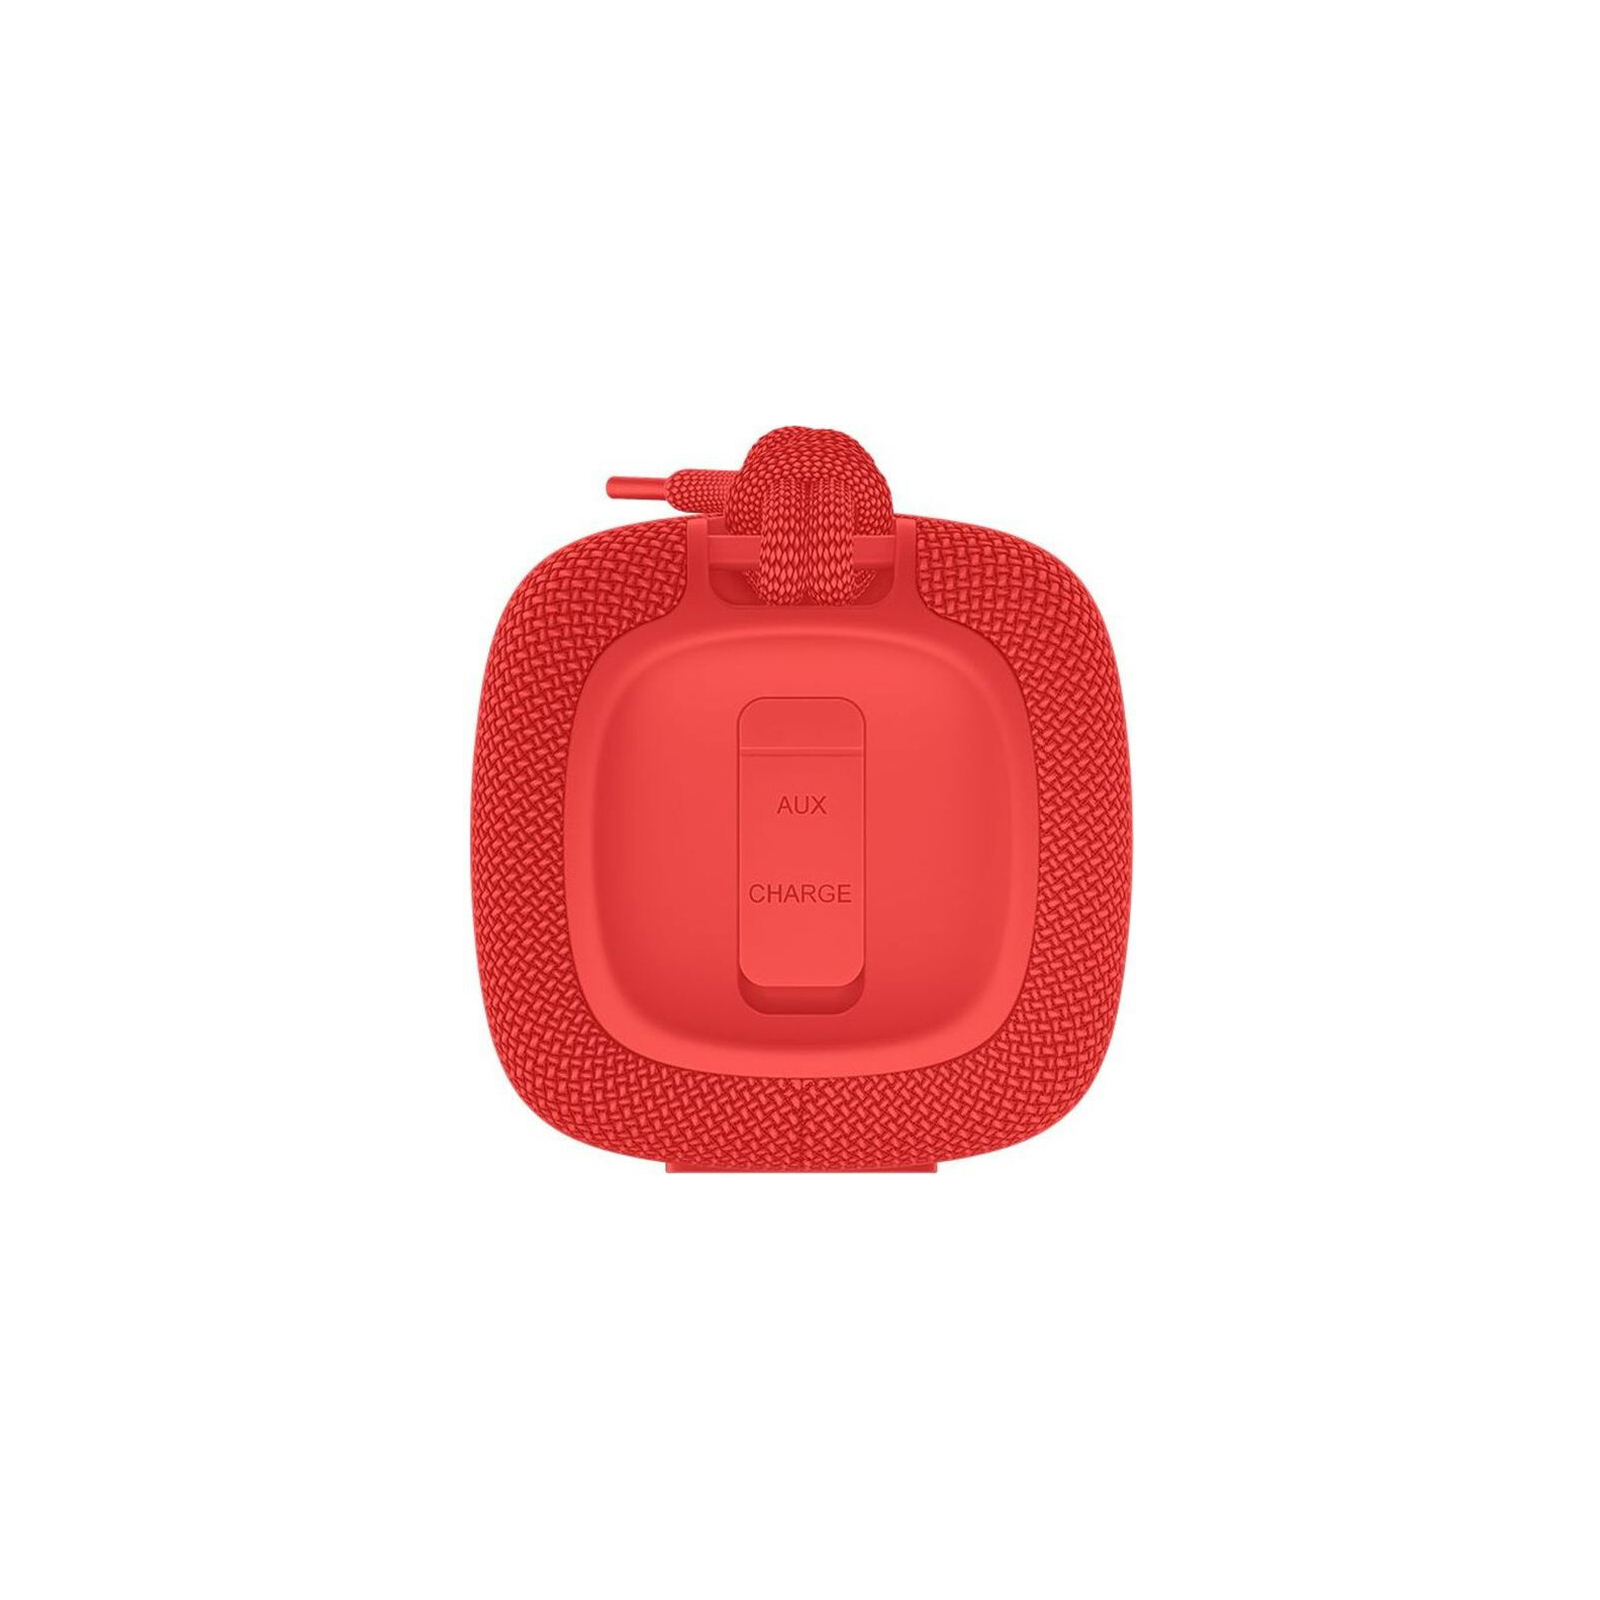 Акустическая система Xiaomi Mi Portable Bluetooth Spearker 16W Red (956434) изображение 3